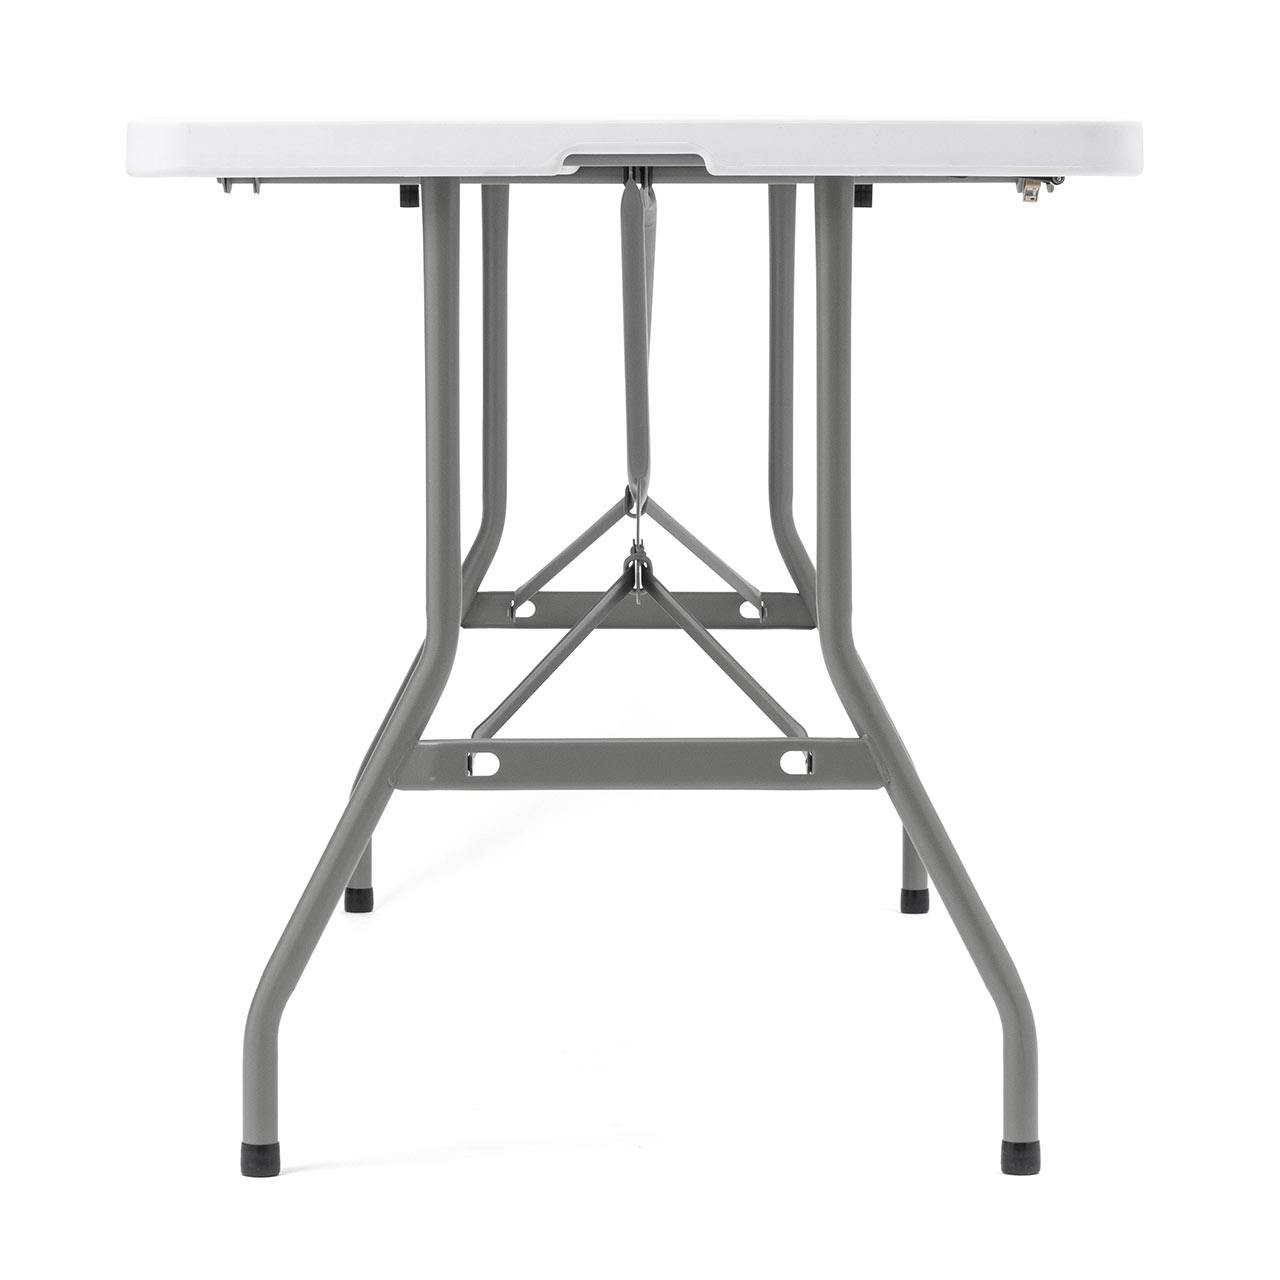 折りたたみテーブル 省スペース W1520mm D710mm 樹脂天板 作業台 簡単組立 持ち運び 取っ手付き 軽量 ホワイト 選挙グッズ 100-FD021W